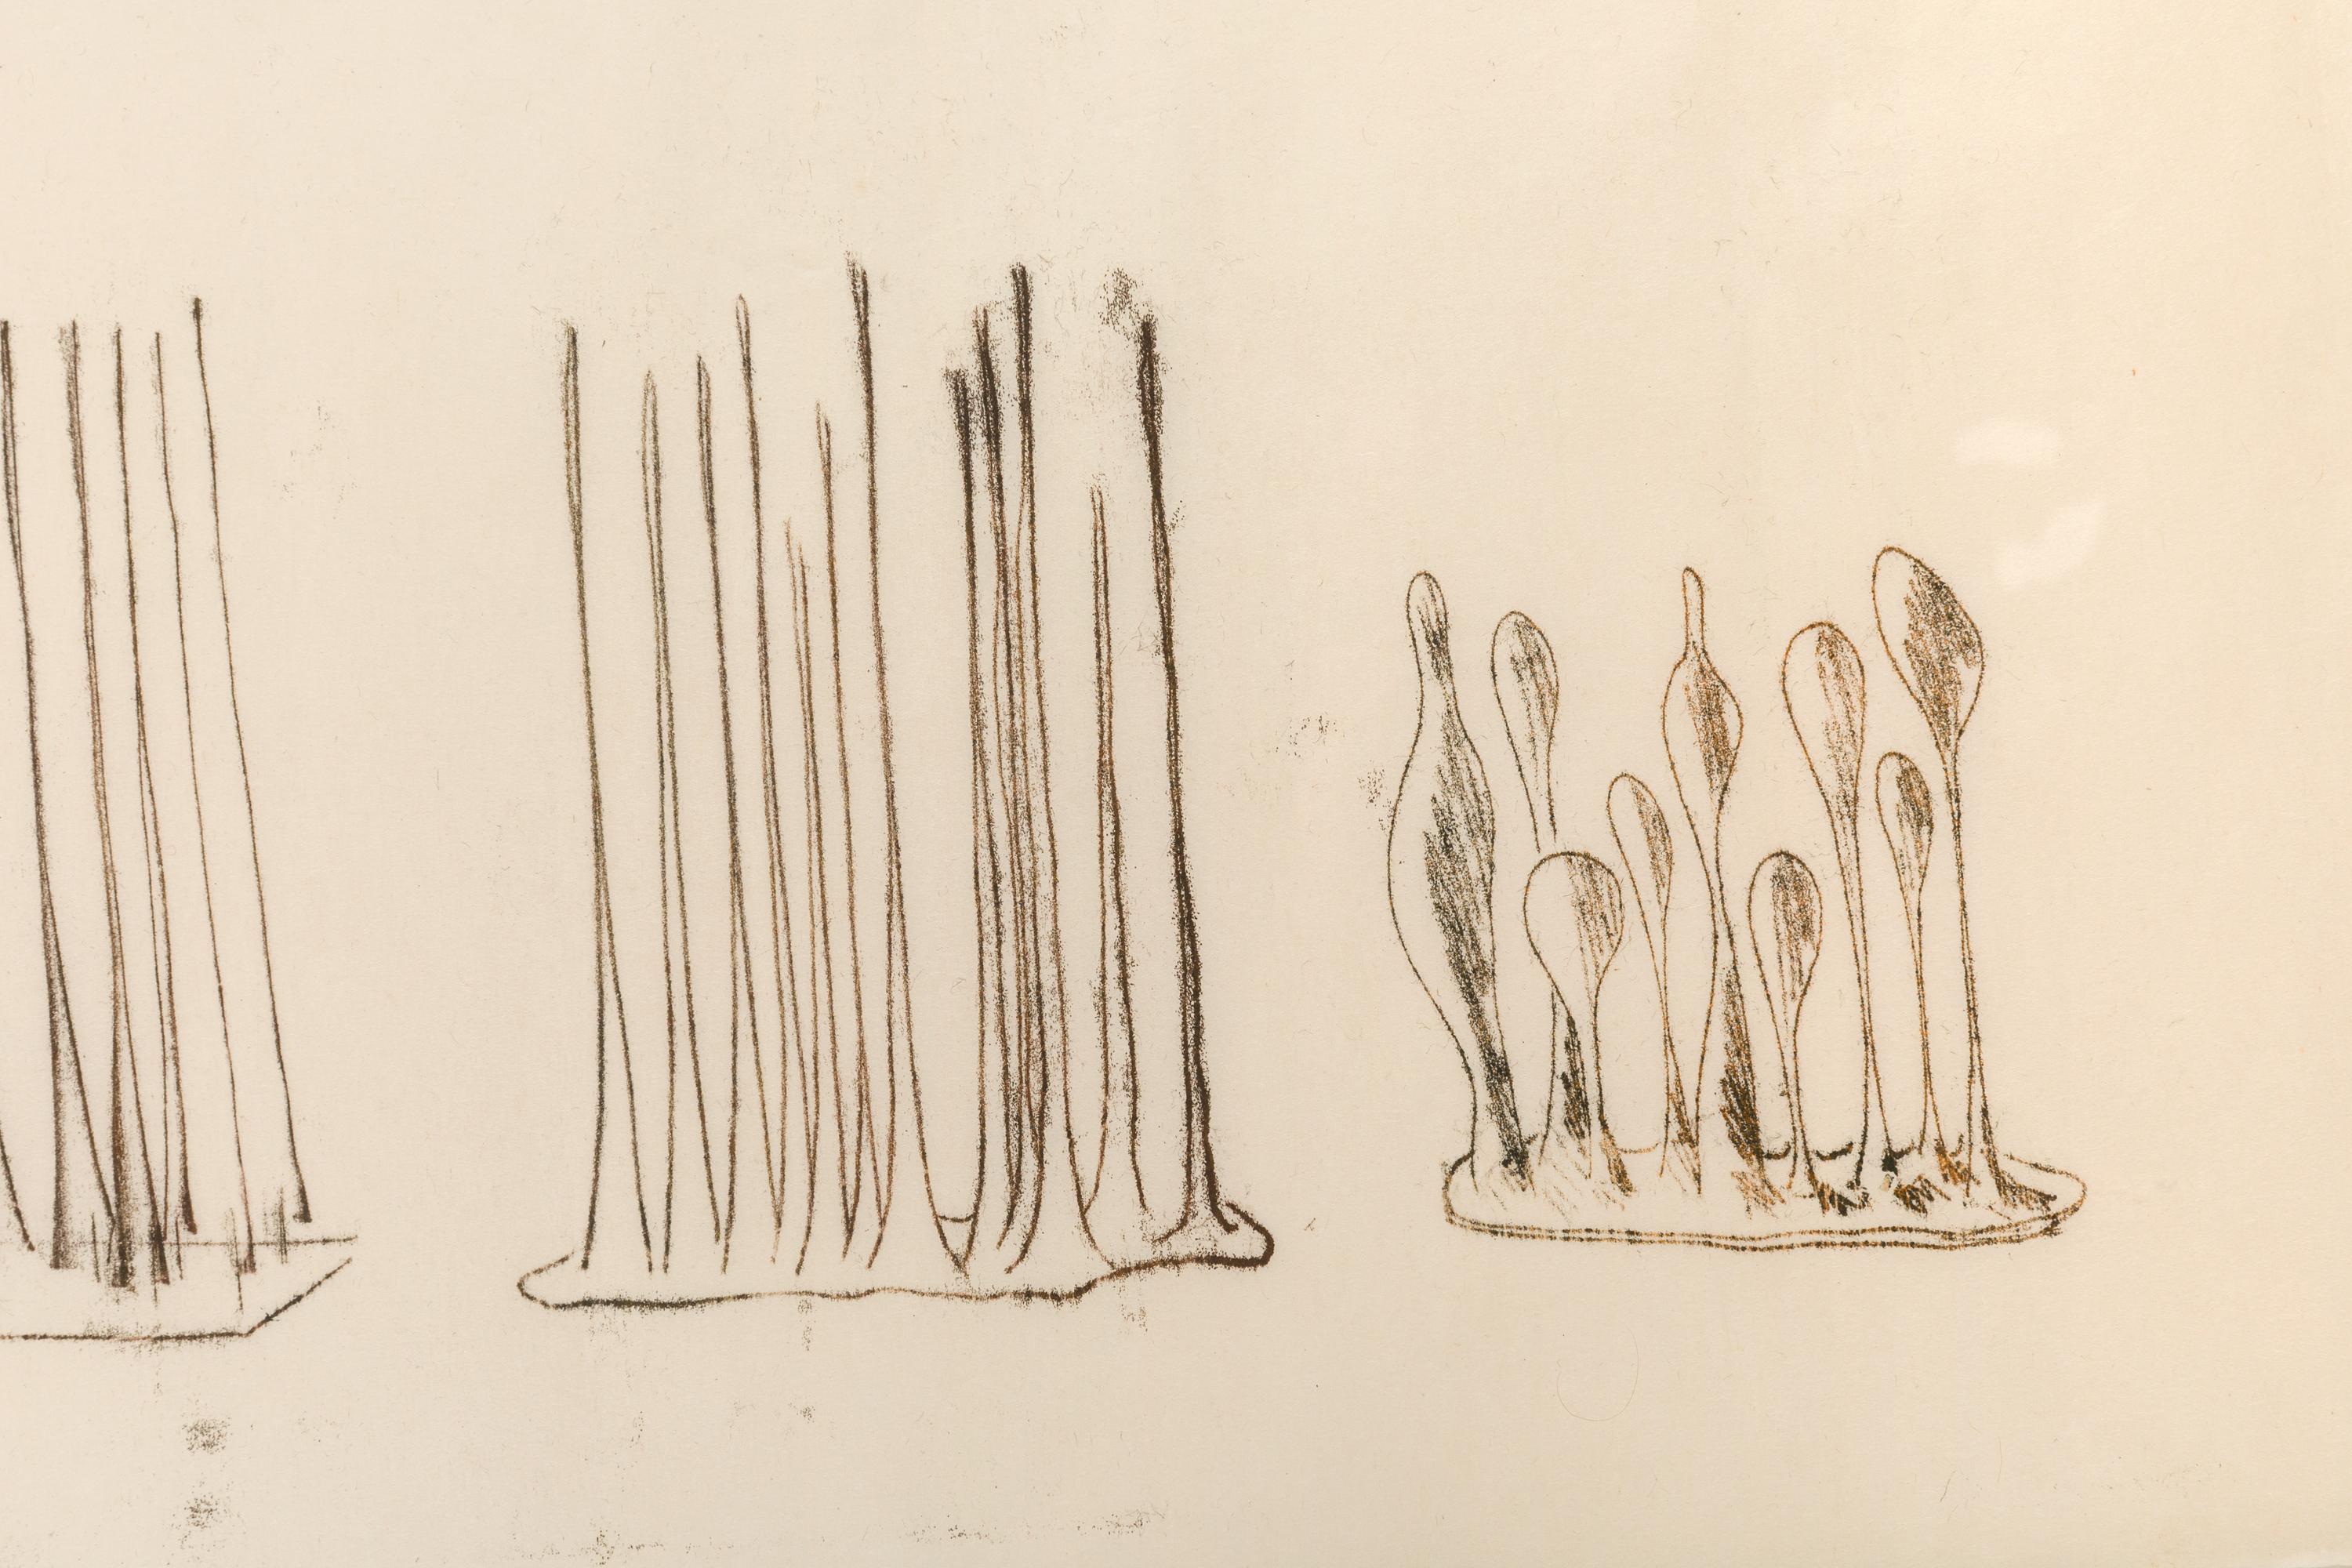 Bertoia schuf im Laufe seiner Karriere Hunderte, wenn nicht Tausende einzigartiger Monoprints, oft als Arbeitszeichnungen für seine Skulpturen. Er wandte eine Vielzahl von Techniken an, um zu seinen einzigartigen Ergebnissen zu gelangen, wobei er